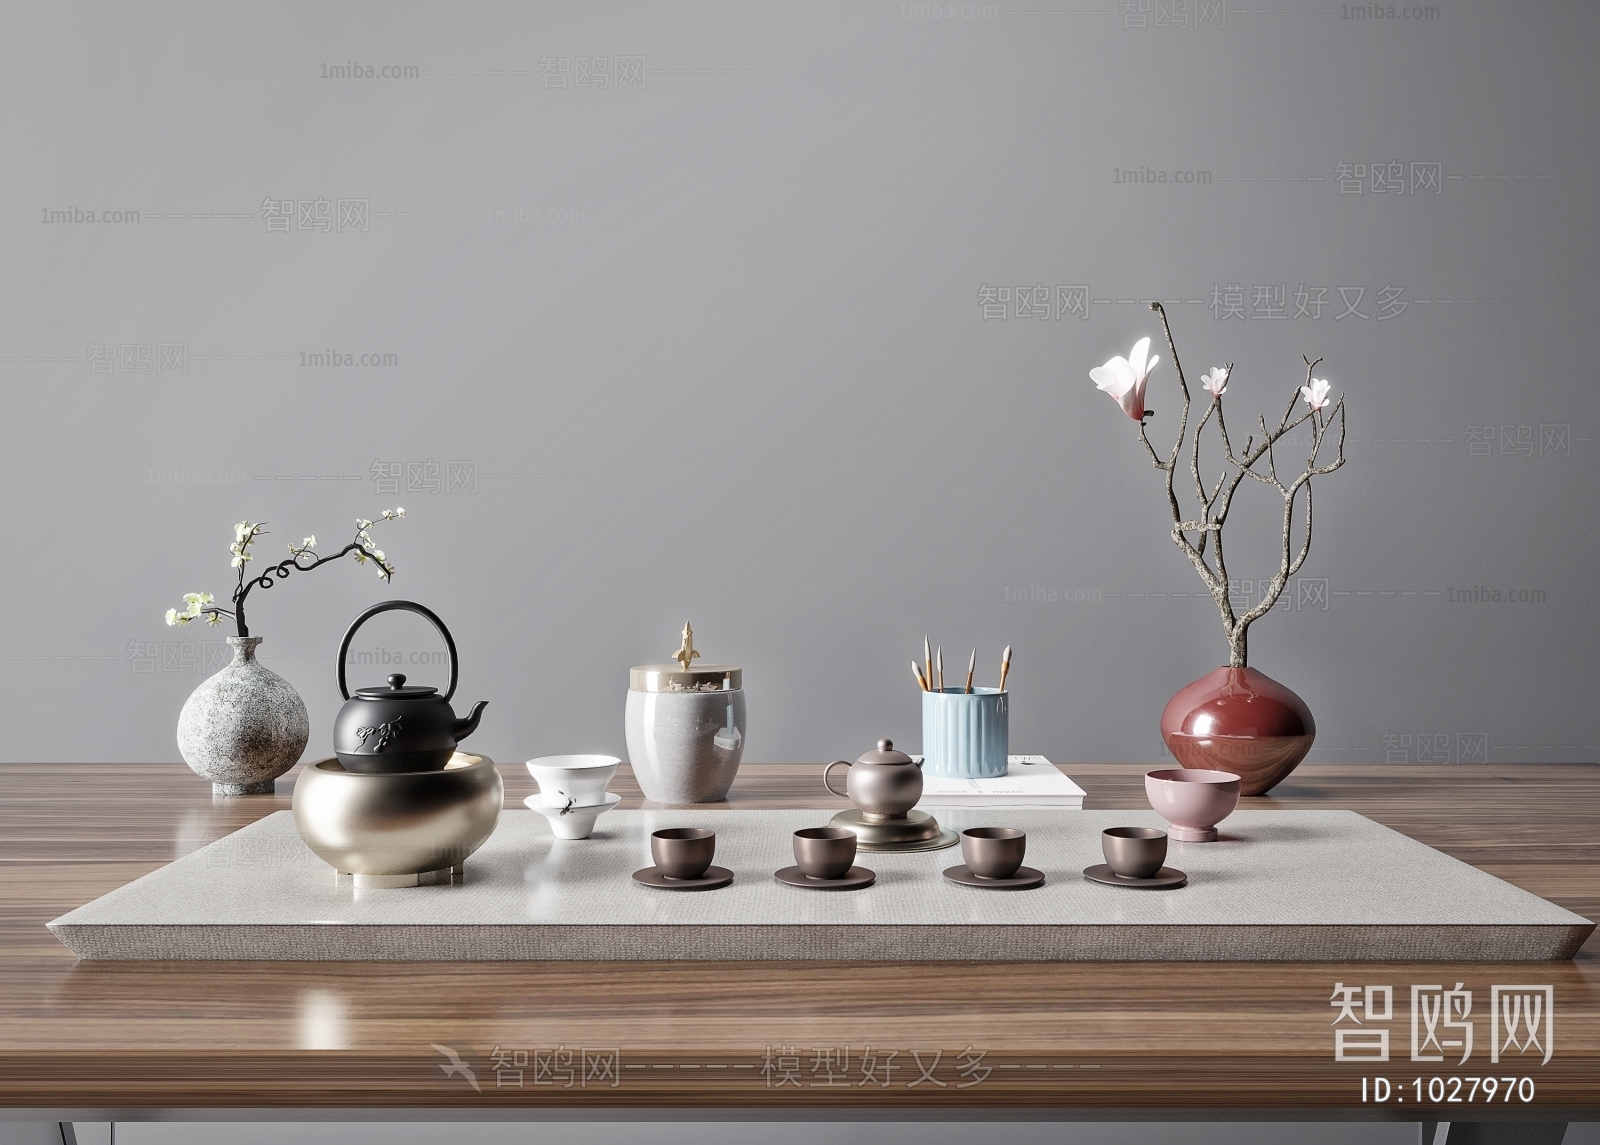 新中式茶具组合